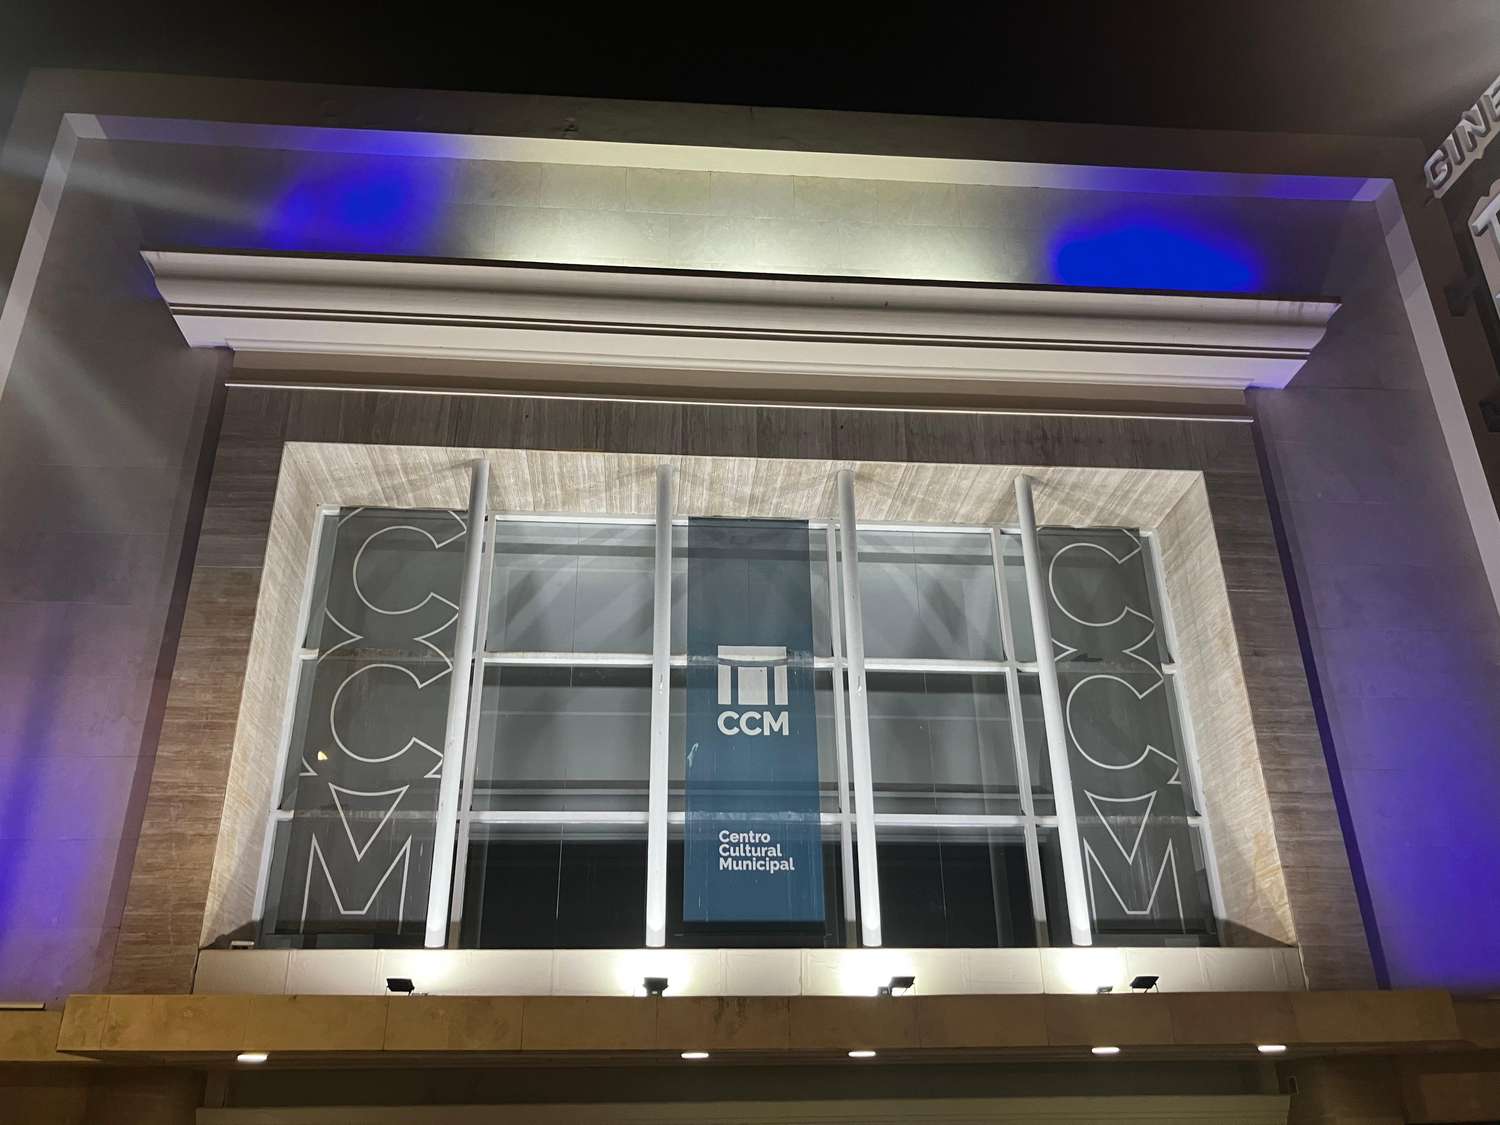 La actividad se visibilizó coloreando de azul la fachada del Centro Cultural venadense.